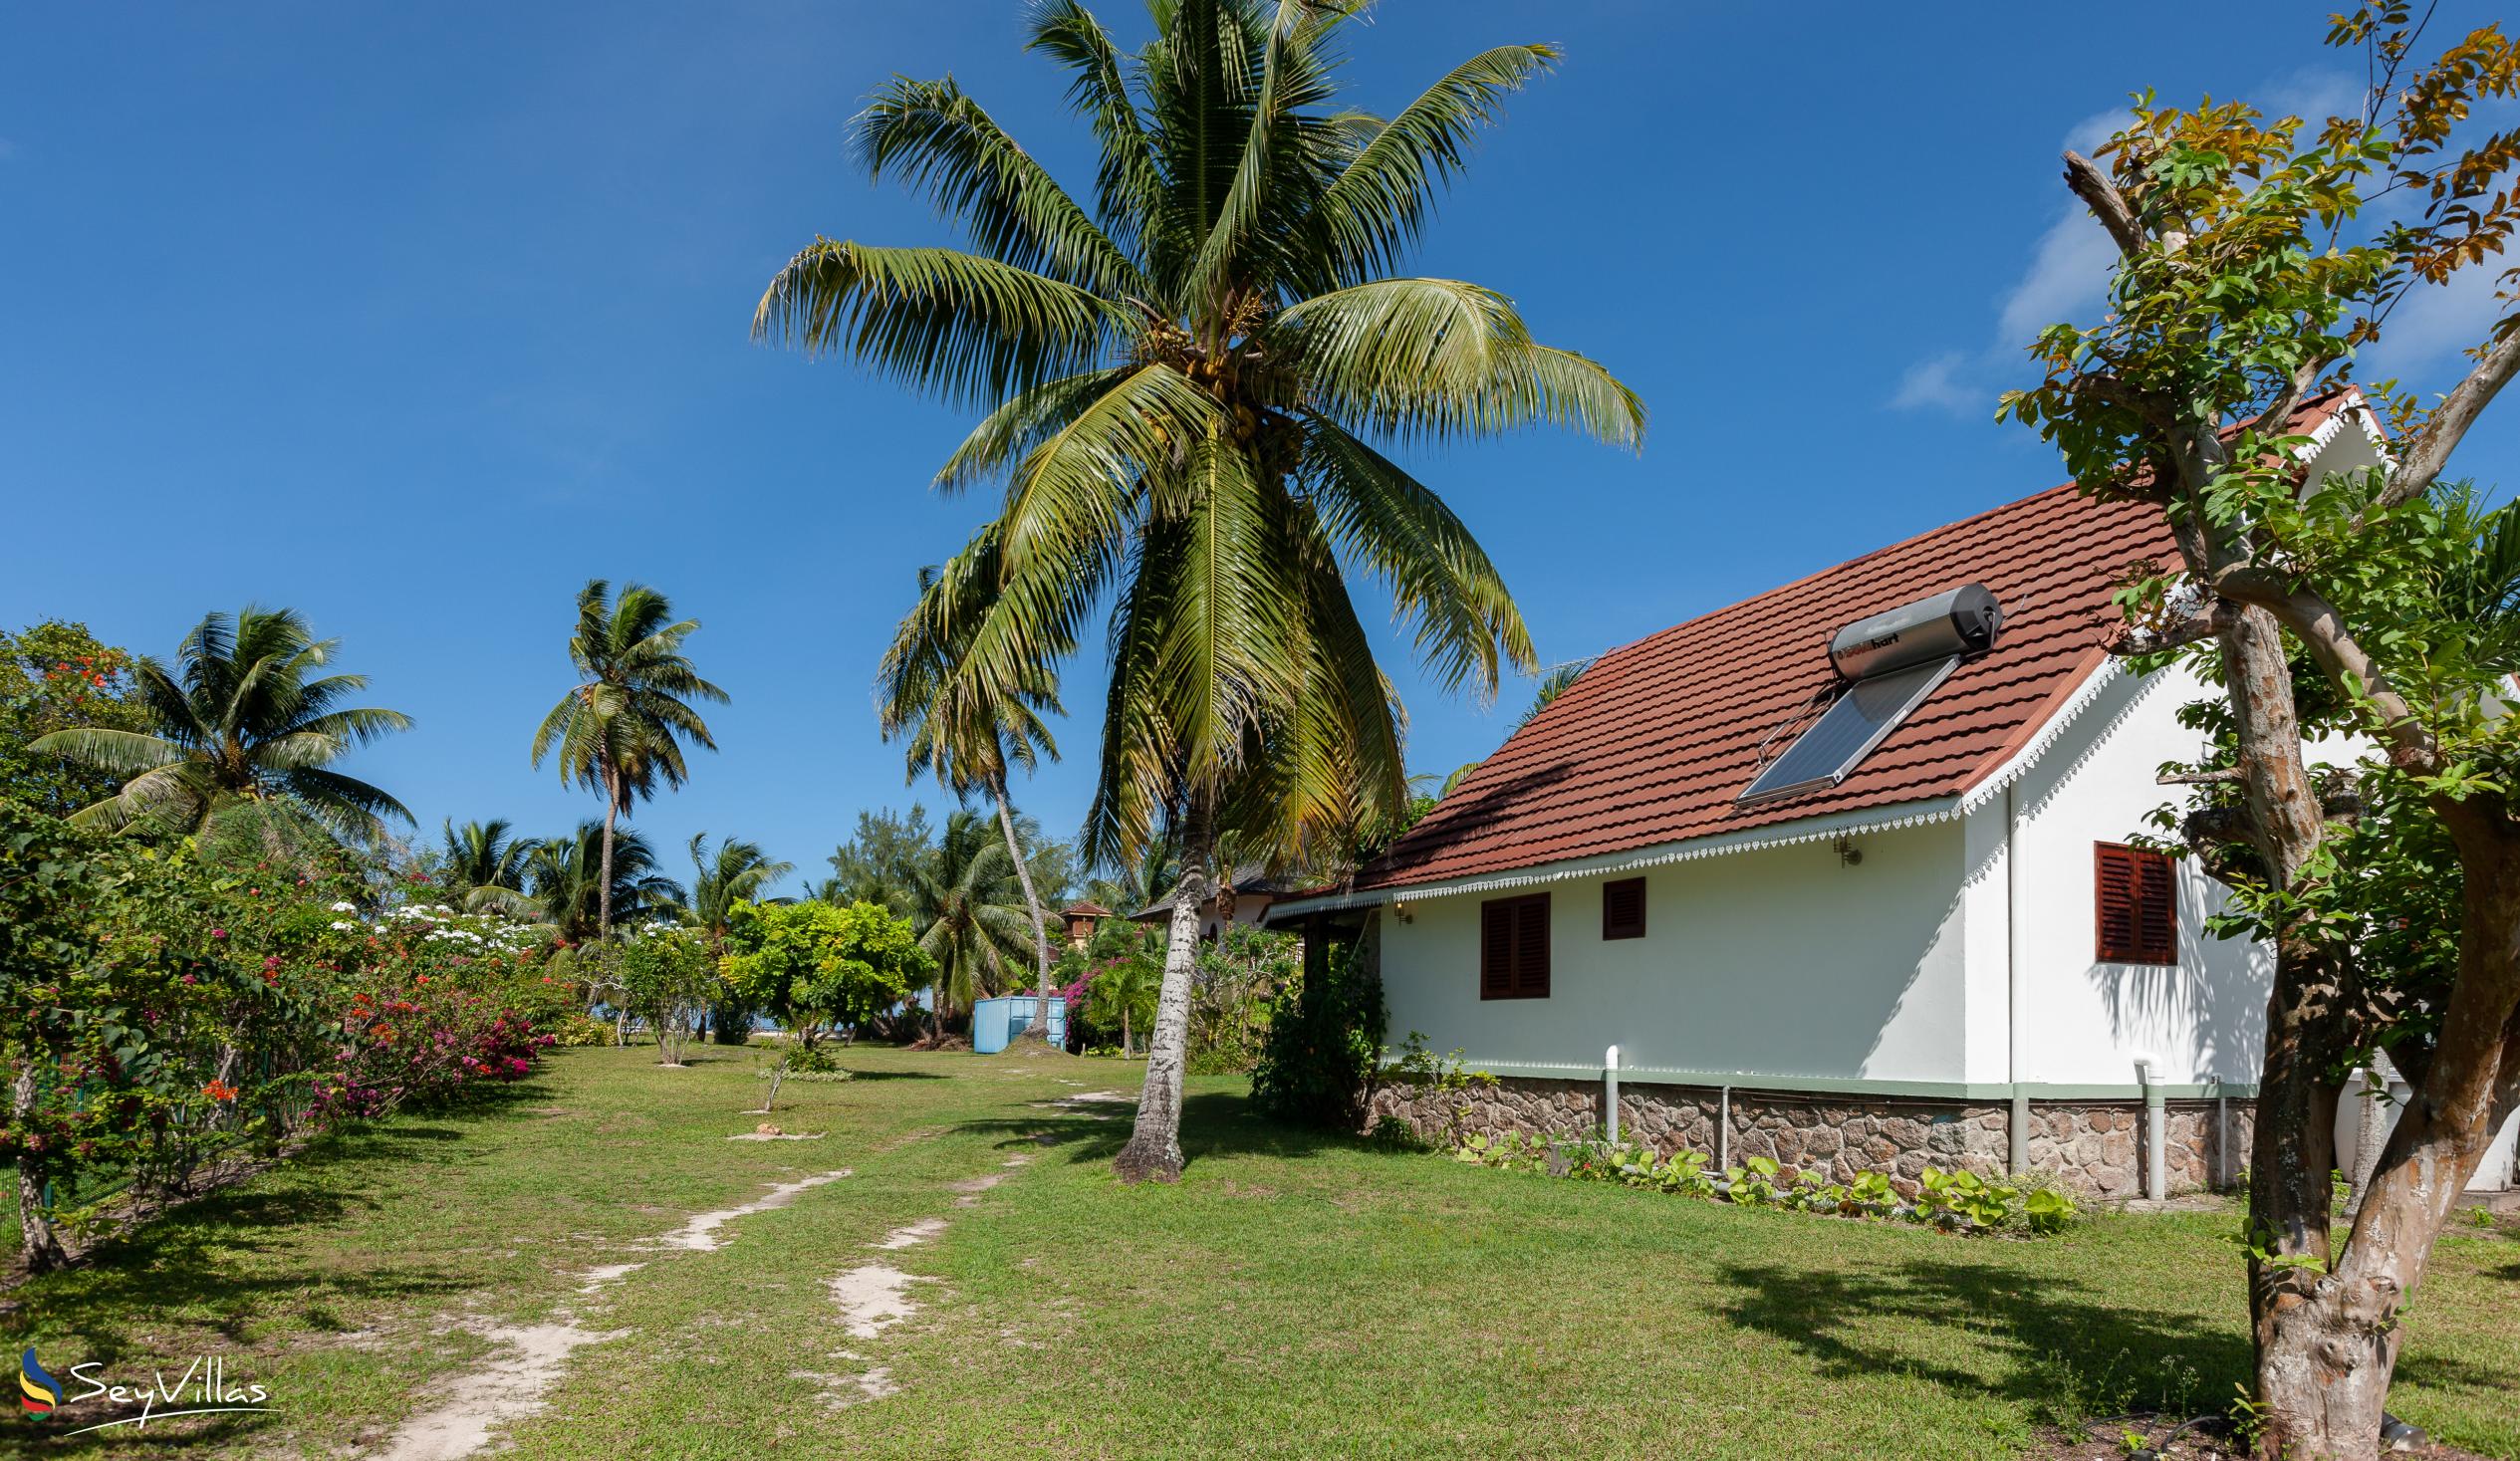 Foto 6: Villas Coco Beach - Esterno - Praslin (Seychelles)